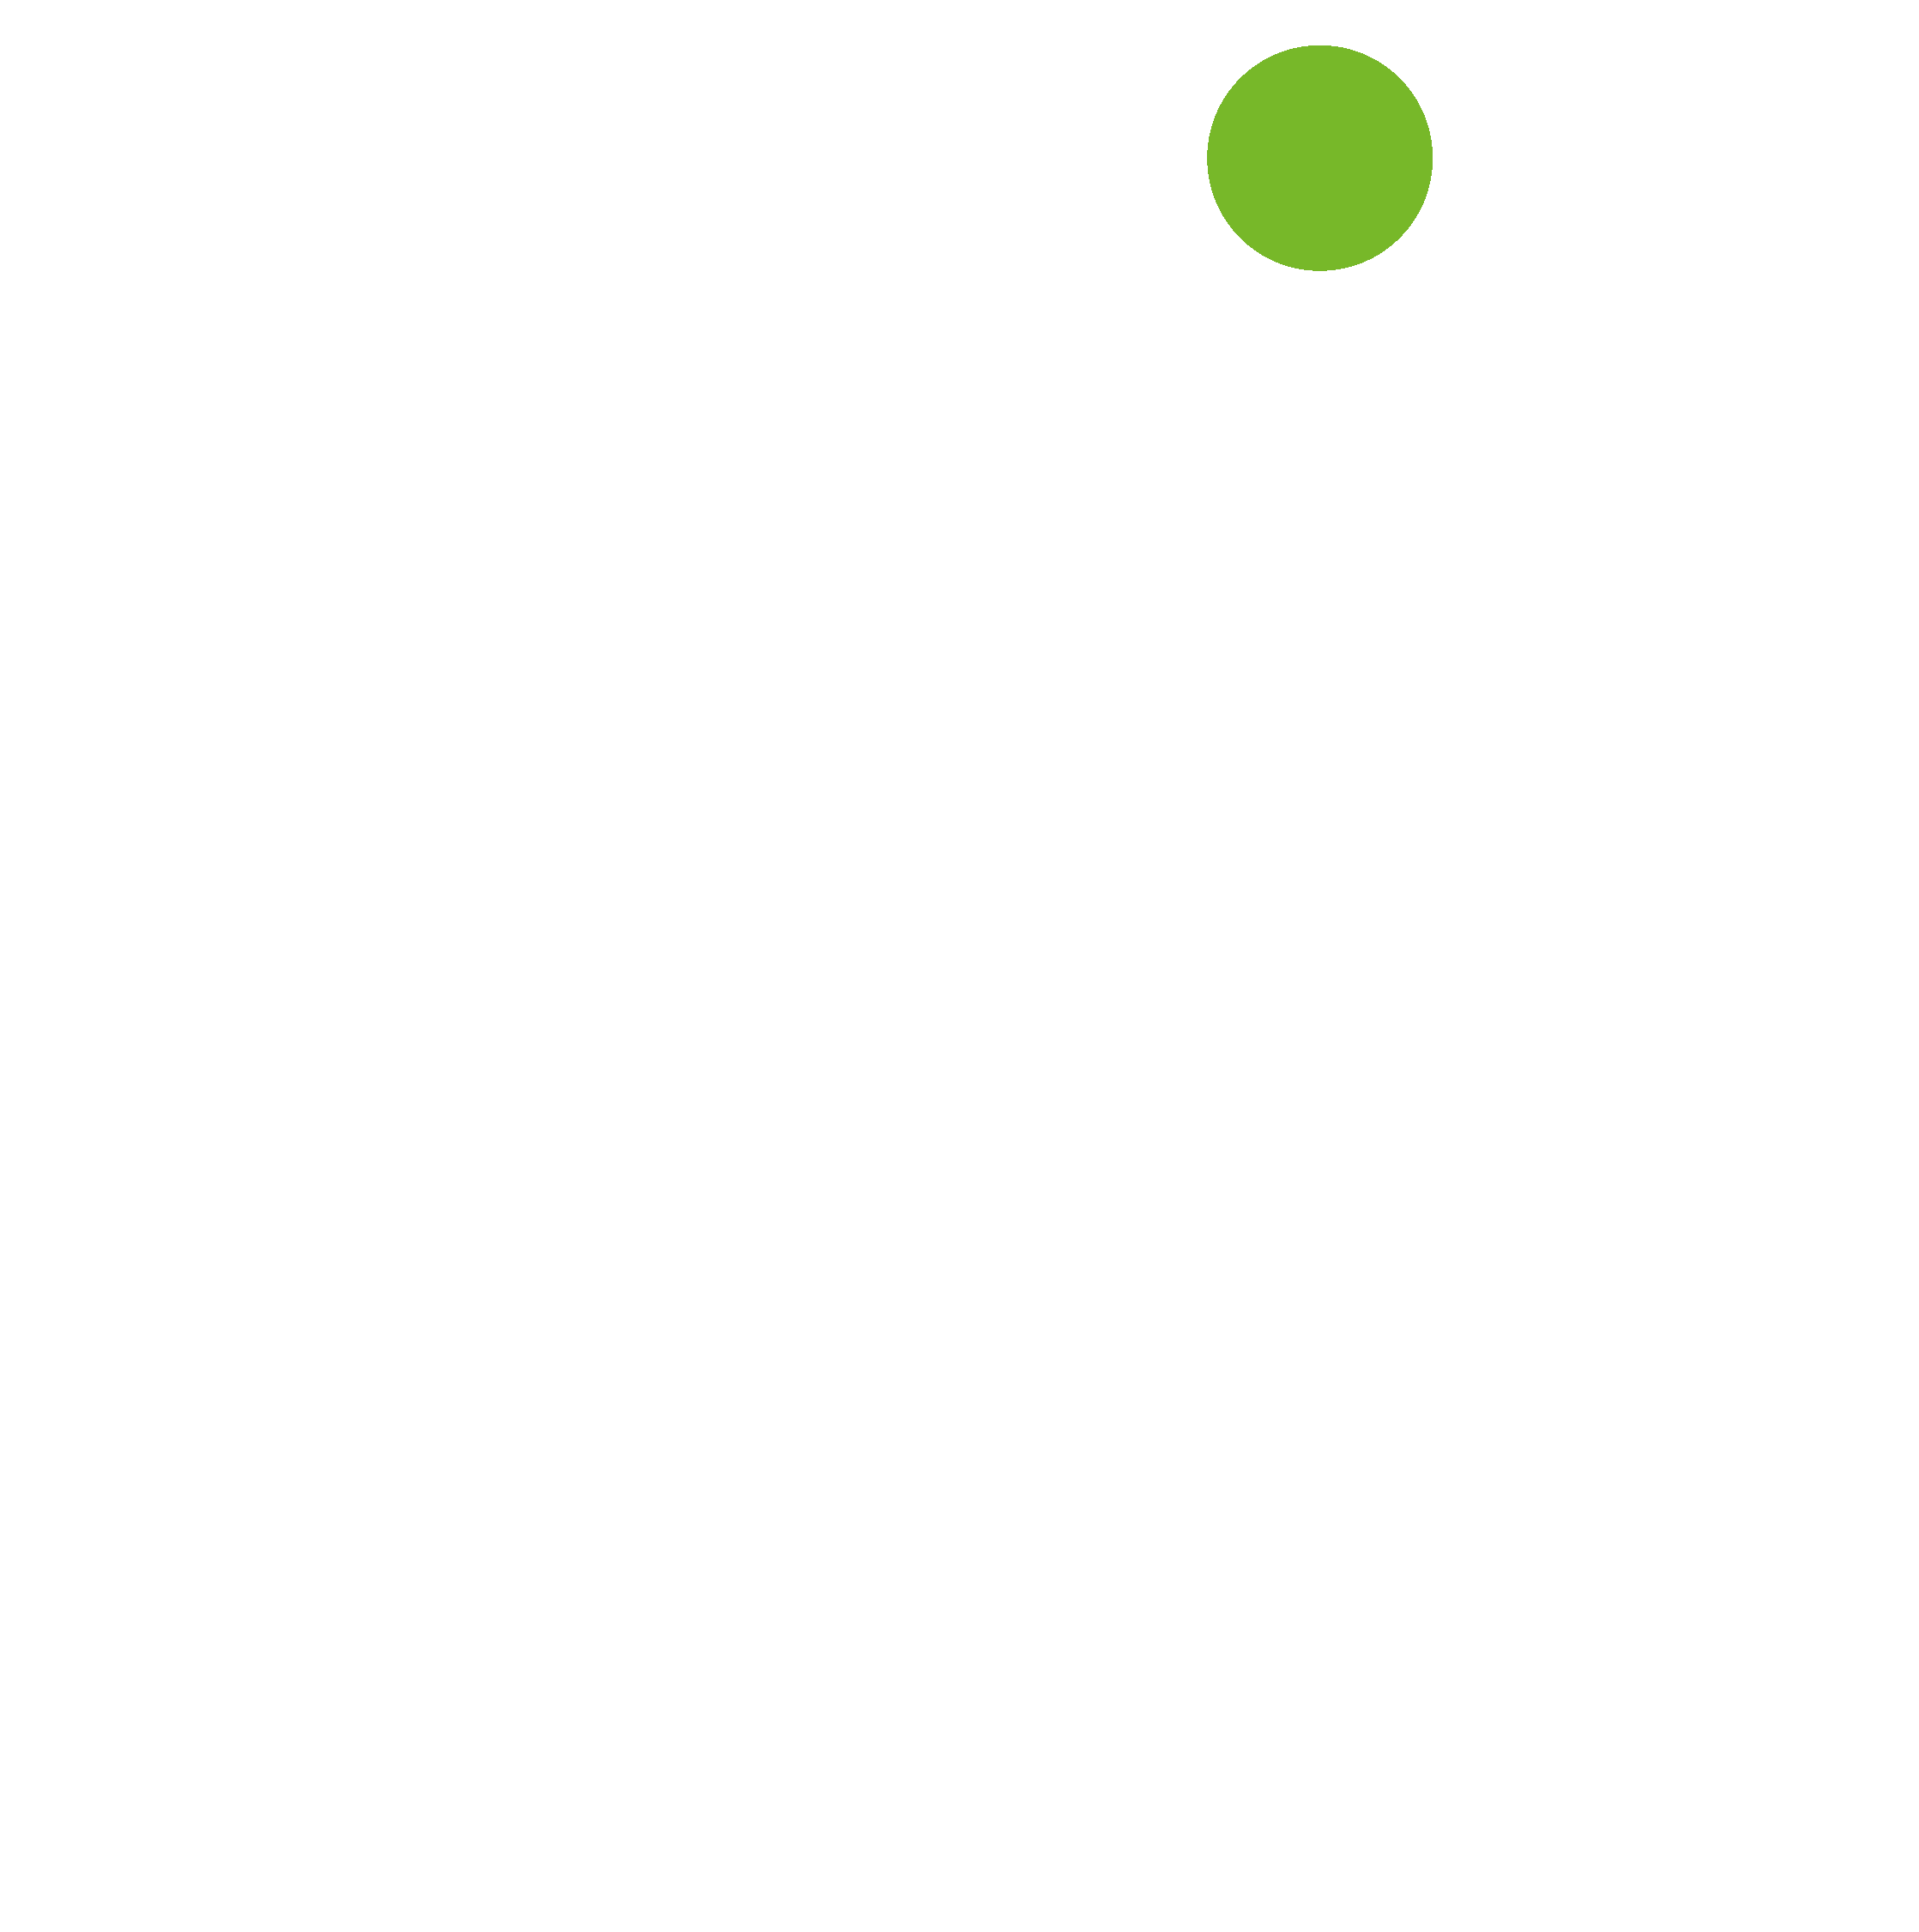 Deyaar Properties logo